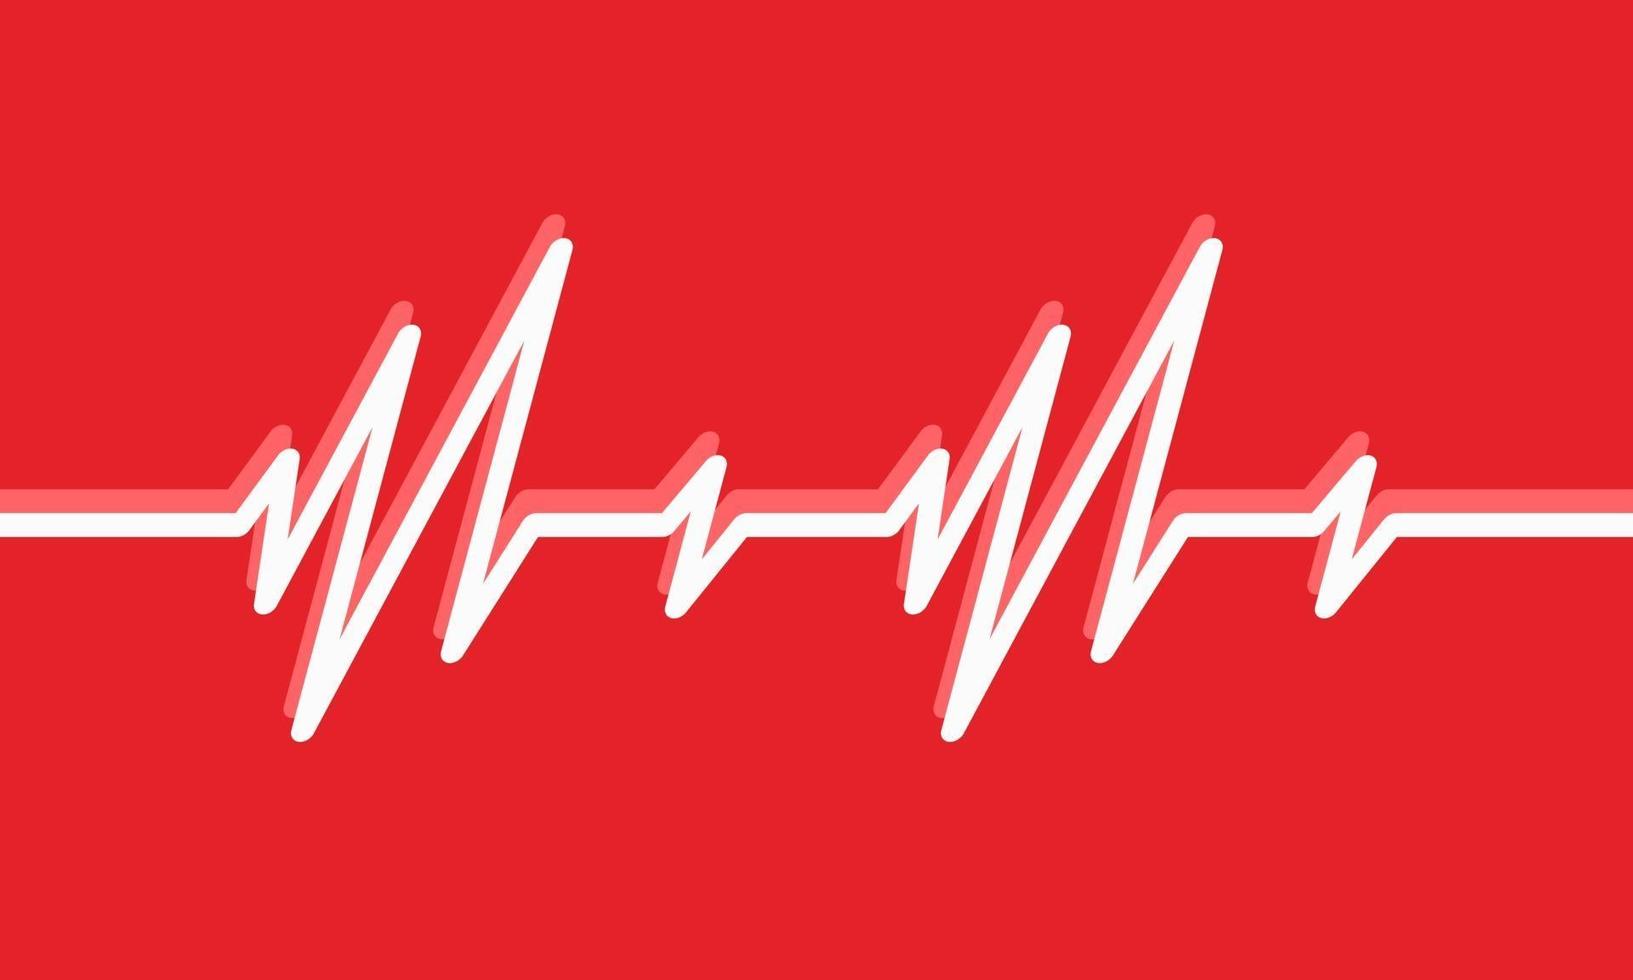 hartslag lijn illustratie pulse trace ecg of ekg cardio grafiek symbool voor gezonde en medische analyse vectorillustratie vector